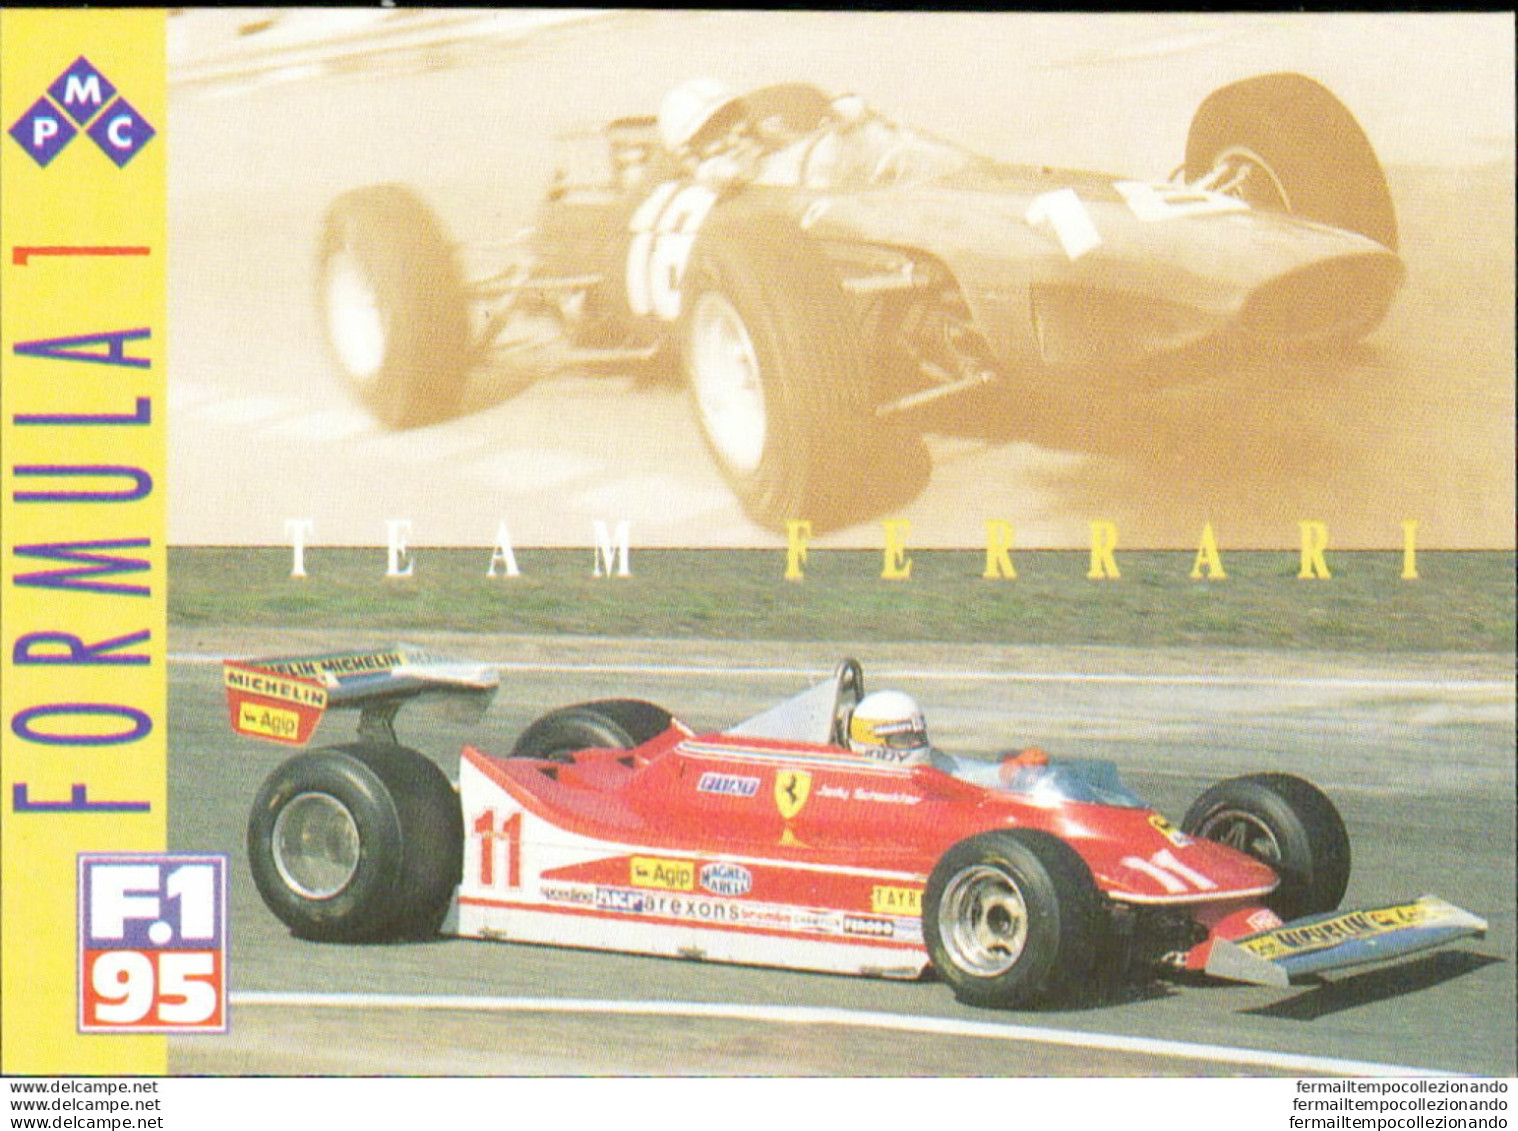 Bh49 1995 Formula 1 Gran Prix Collection Card Ferrari Team N 49 - Catalogus